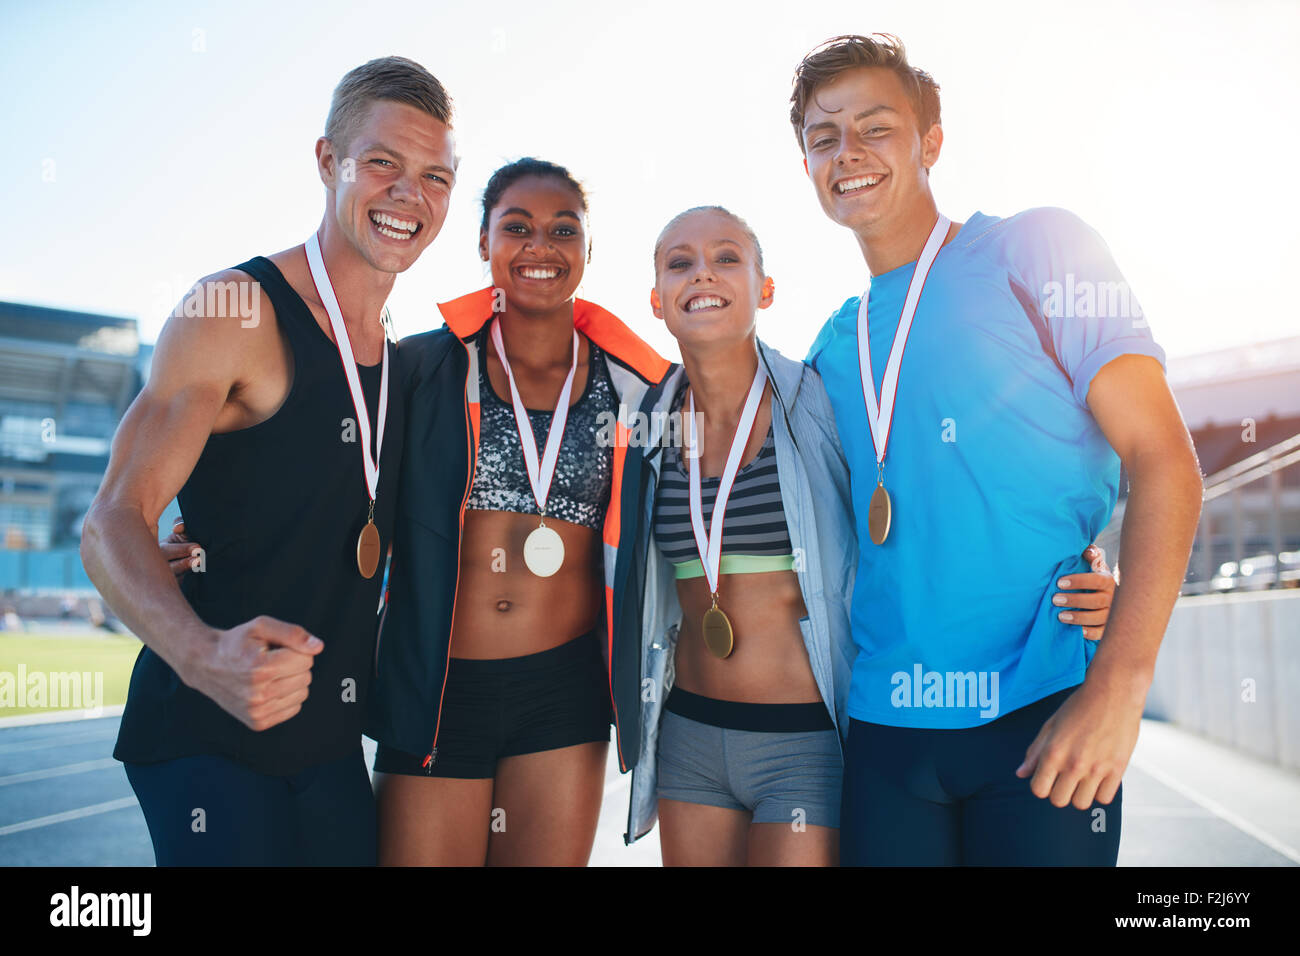 Glücklich multirassische Athleten feiern Sieg stehen gemeinsam auf der Rennstrecke. Gruppe der Läufer mit Medaillen gewinnen ein compe Stockfoto